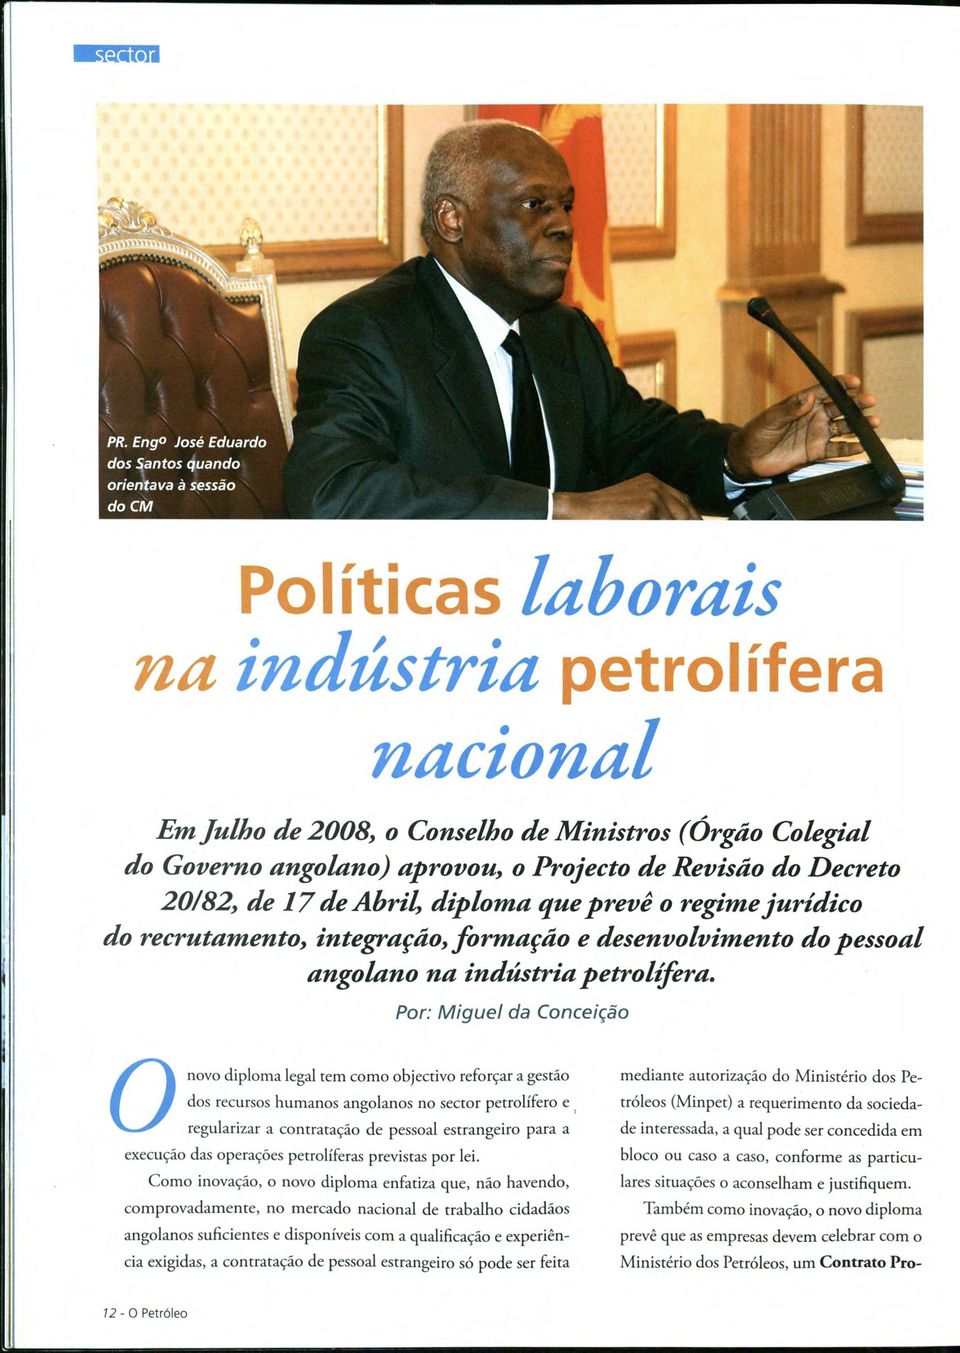 Por: M iguel da Conceiqao Onovo diploma legal tem como objectivo reforjar a gestáo dos recursos humanos angolanos no sector petrolífero e regularizar a contratado de pessoal estrangeiro para a